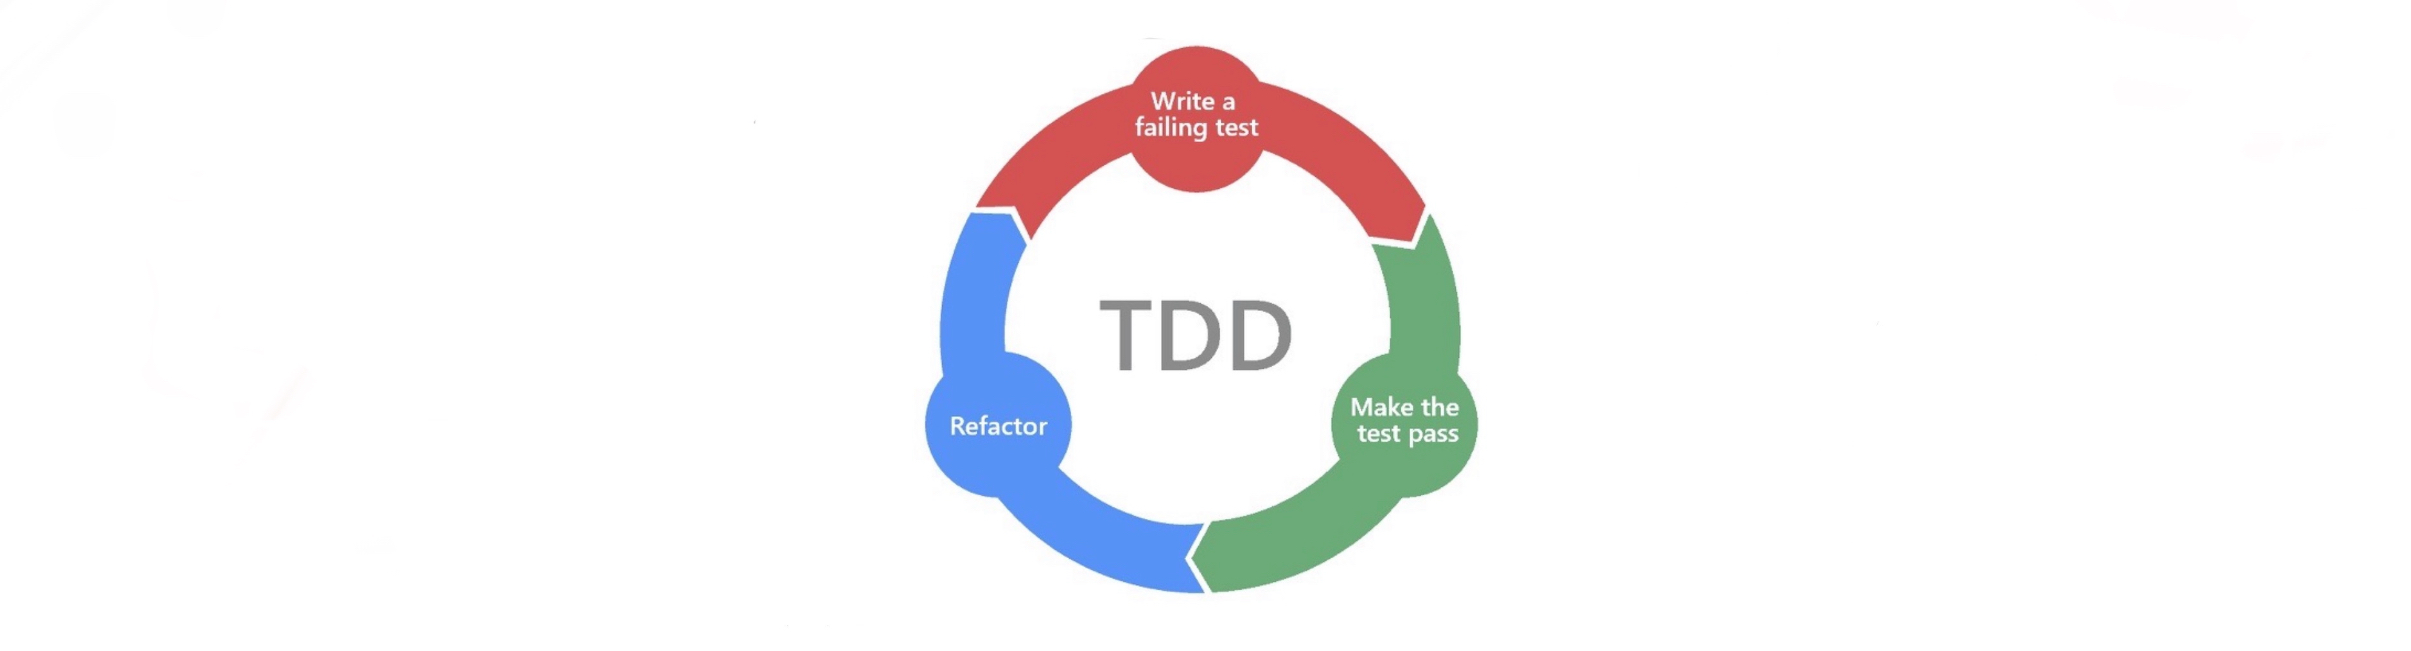 软件测试/测试开发|常见软件测试框架类型：TDD、BDD、DDD、ATDD、DevOps介绍